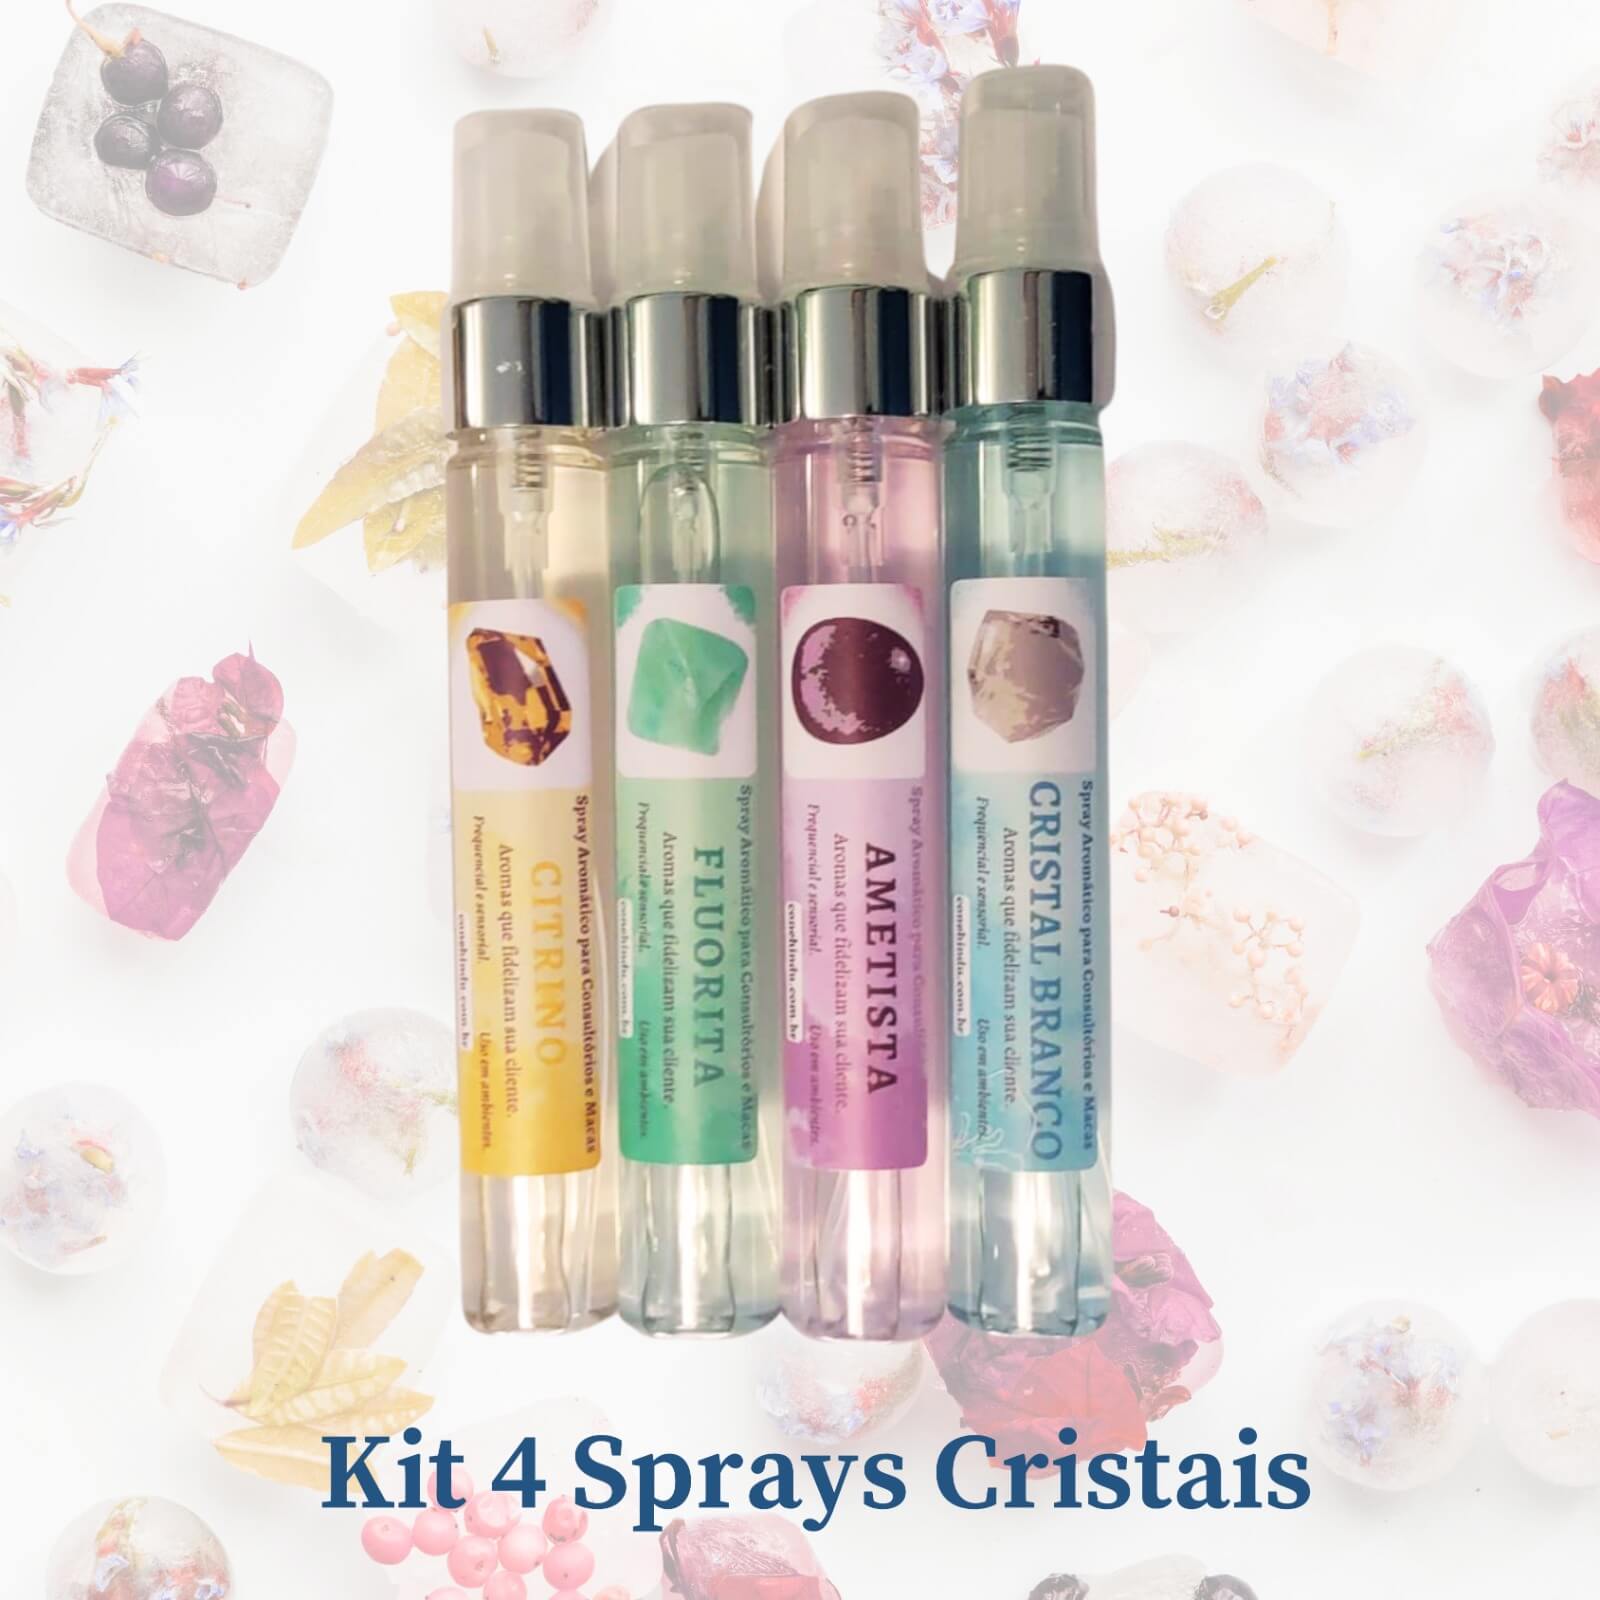 kit 4 sprays cristais